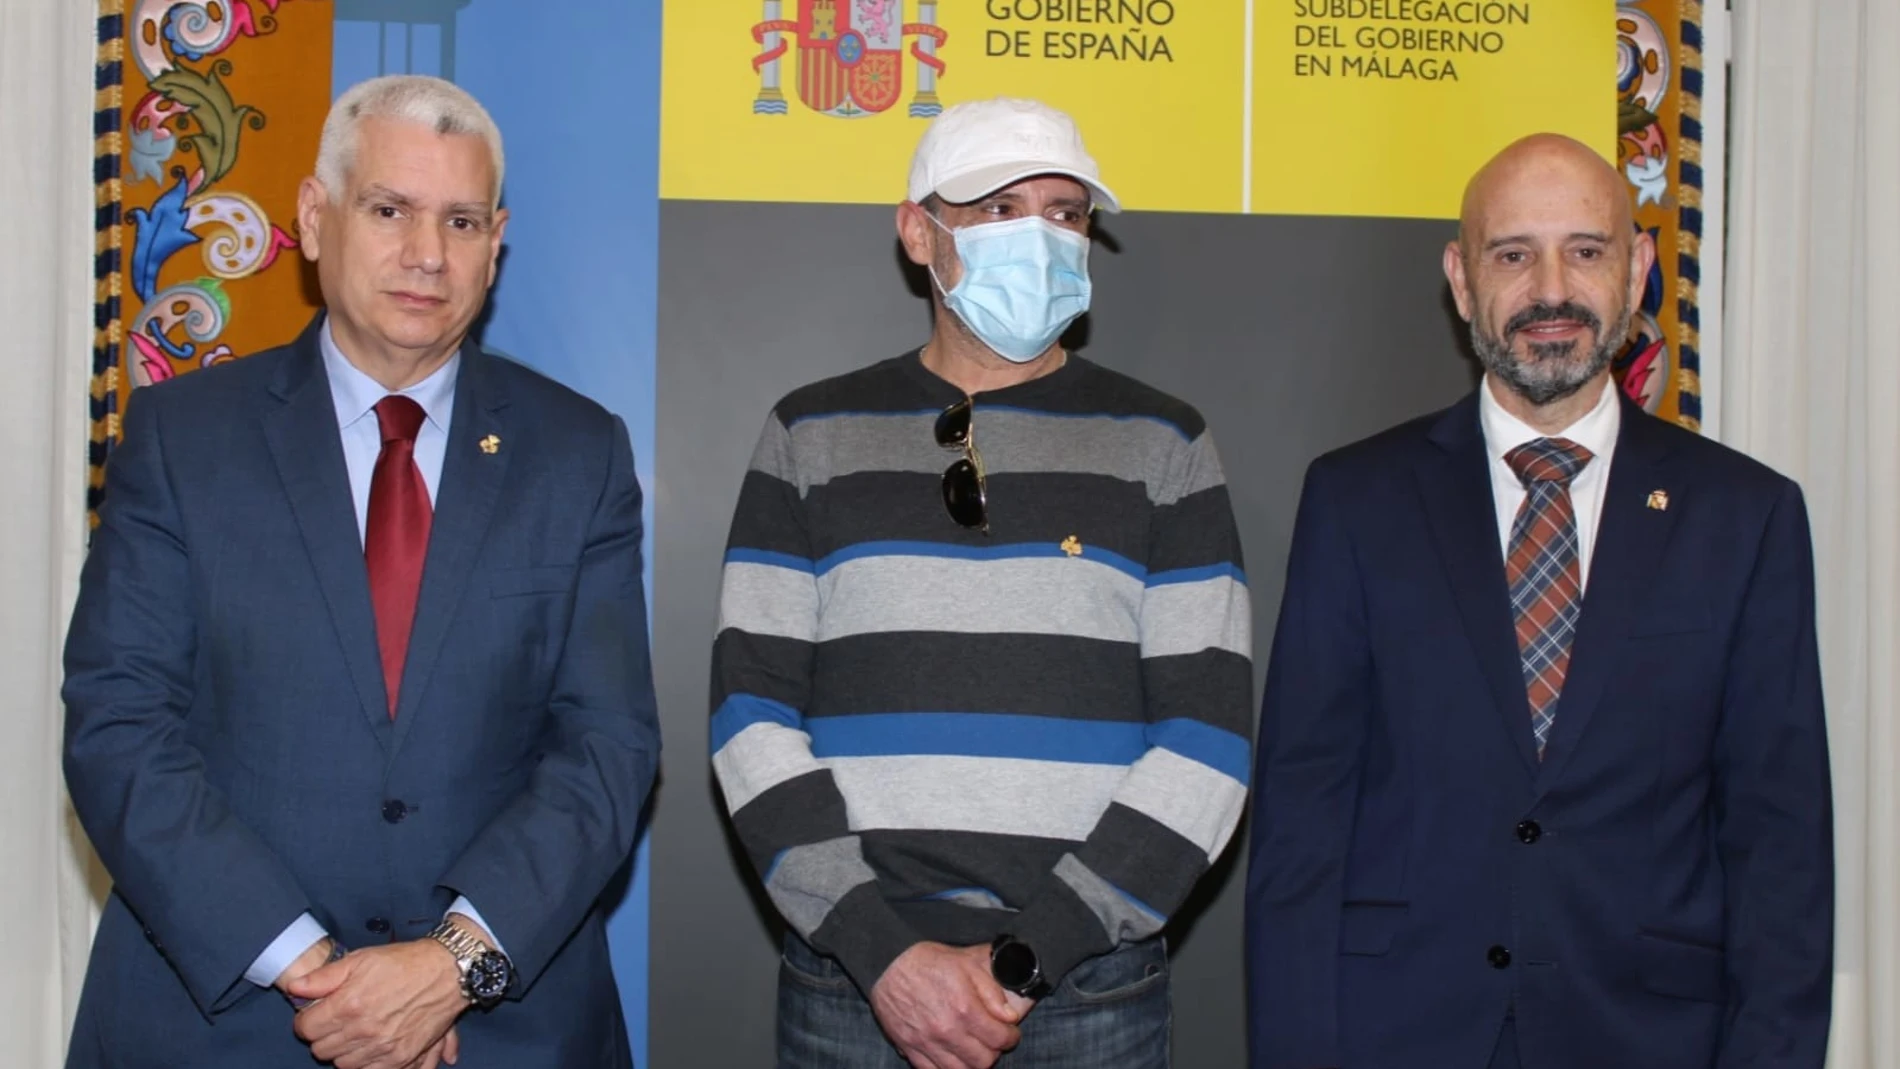 Rueda de prensa de presentación del preso que será indultado por la Cofradía de El Rico, junto al hermano mayor y el subdelegado del Gobierno en Málaga